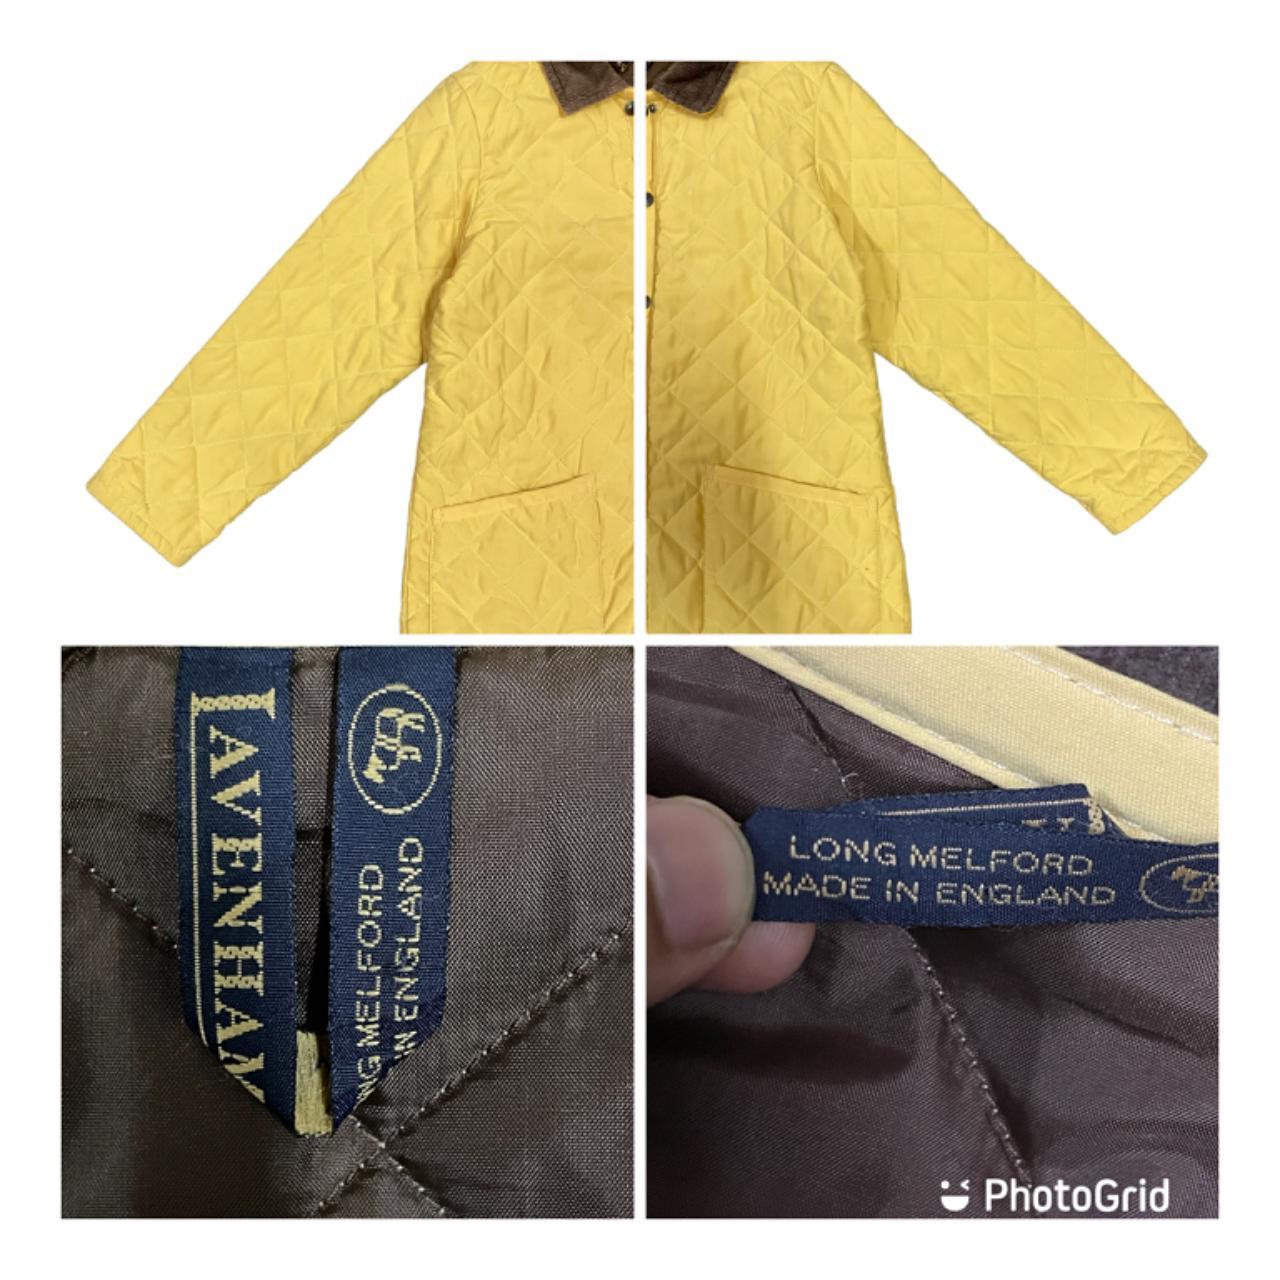 Lavenham Men's Yellow Jacket (4)